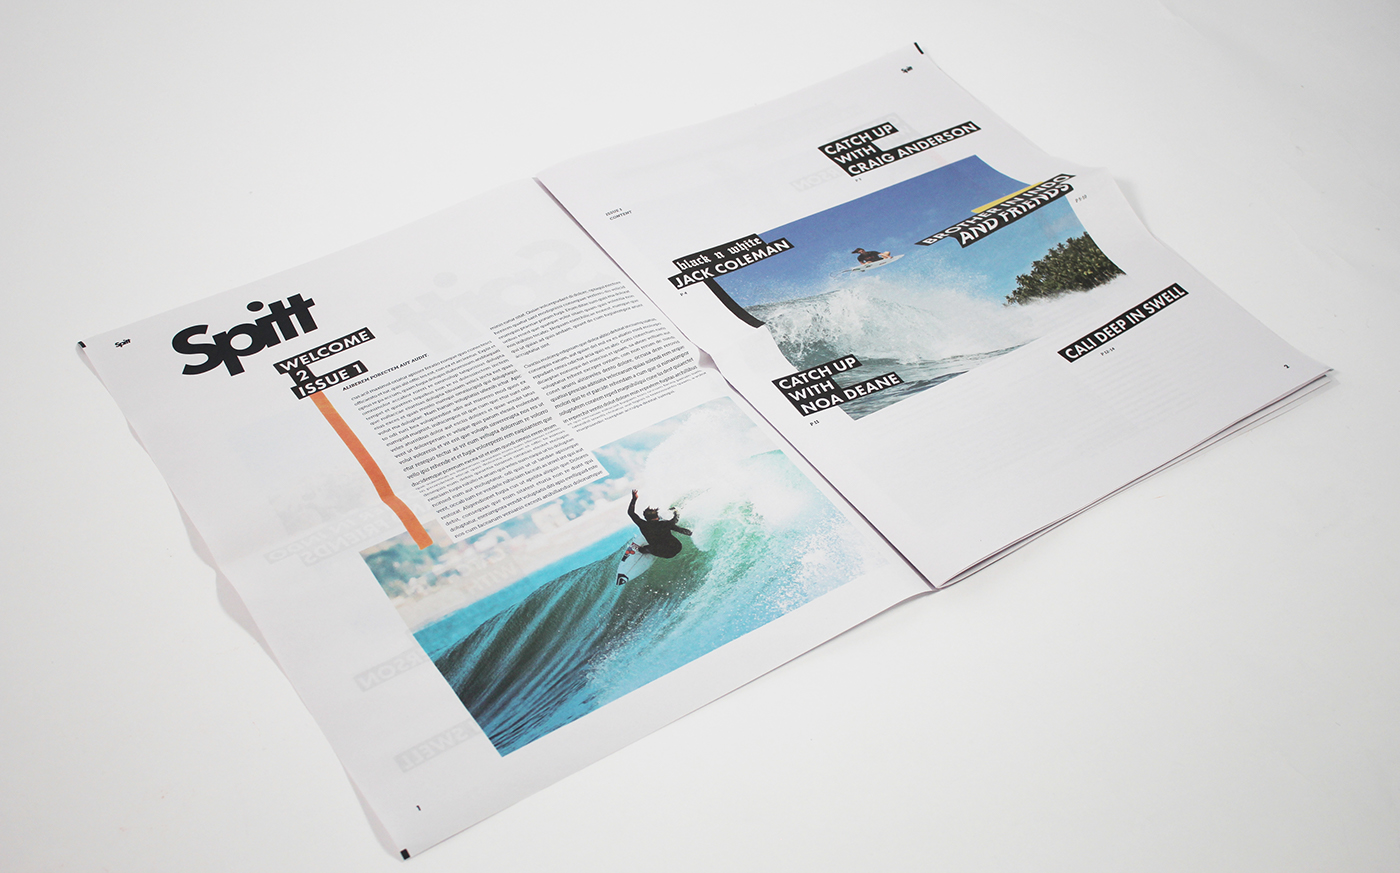 Adobe Portfolio newprint newspaper print Surf free tabliod magazine surfing water